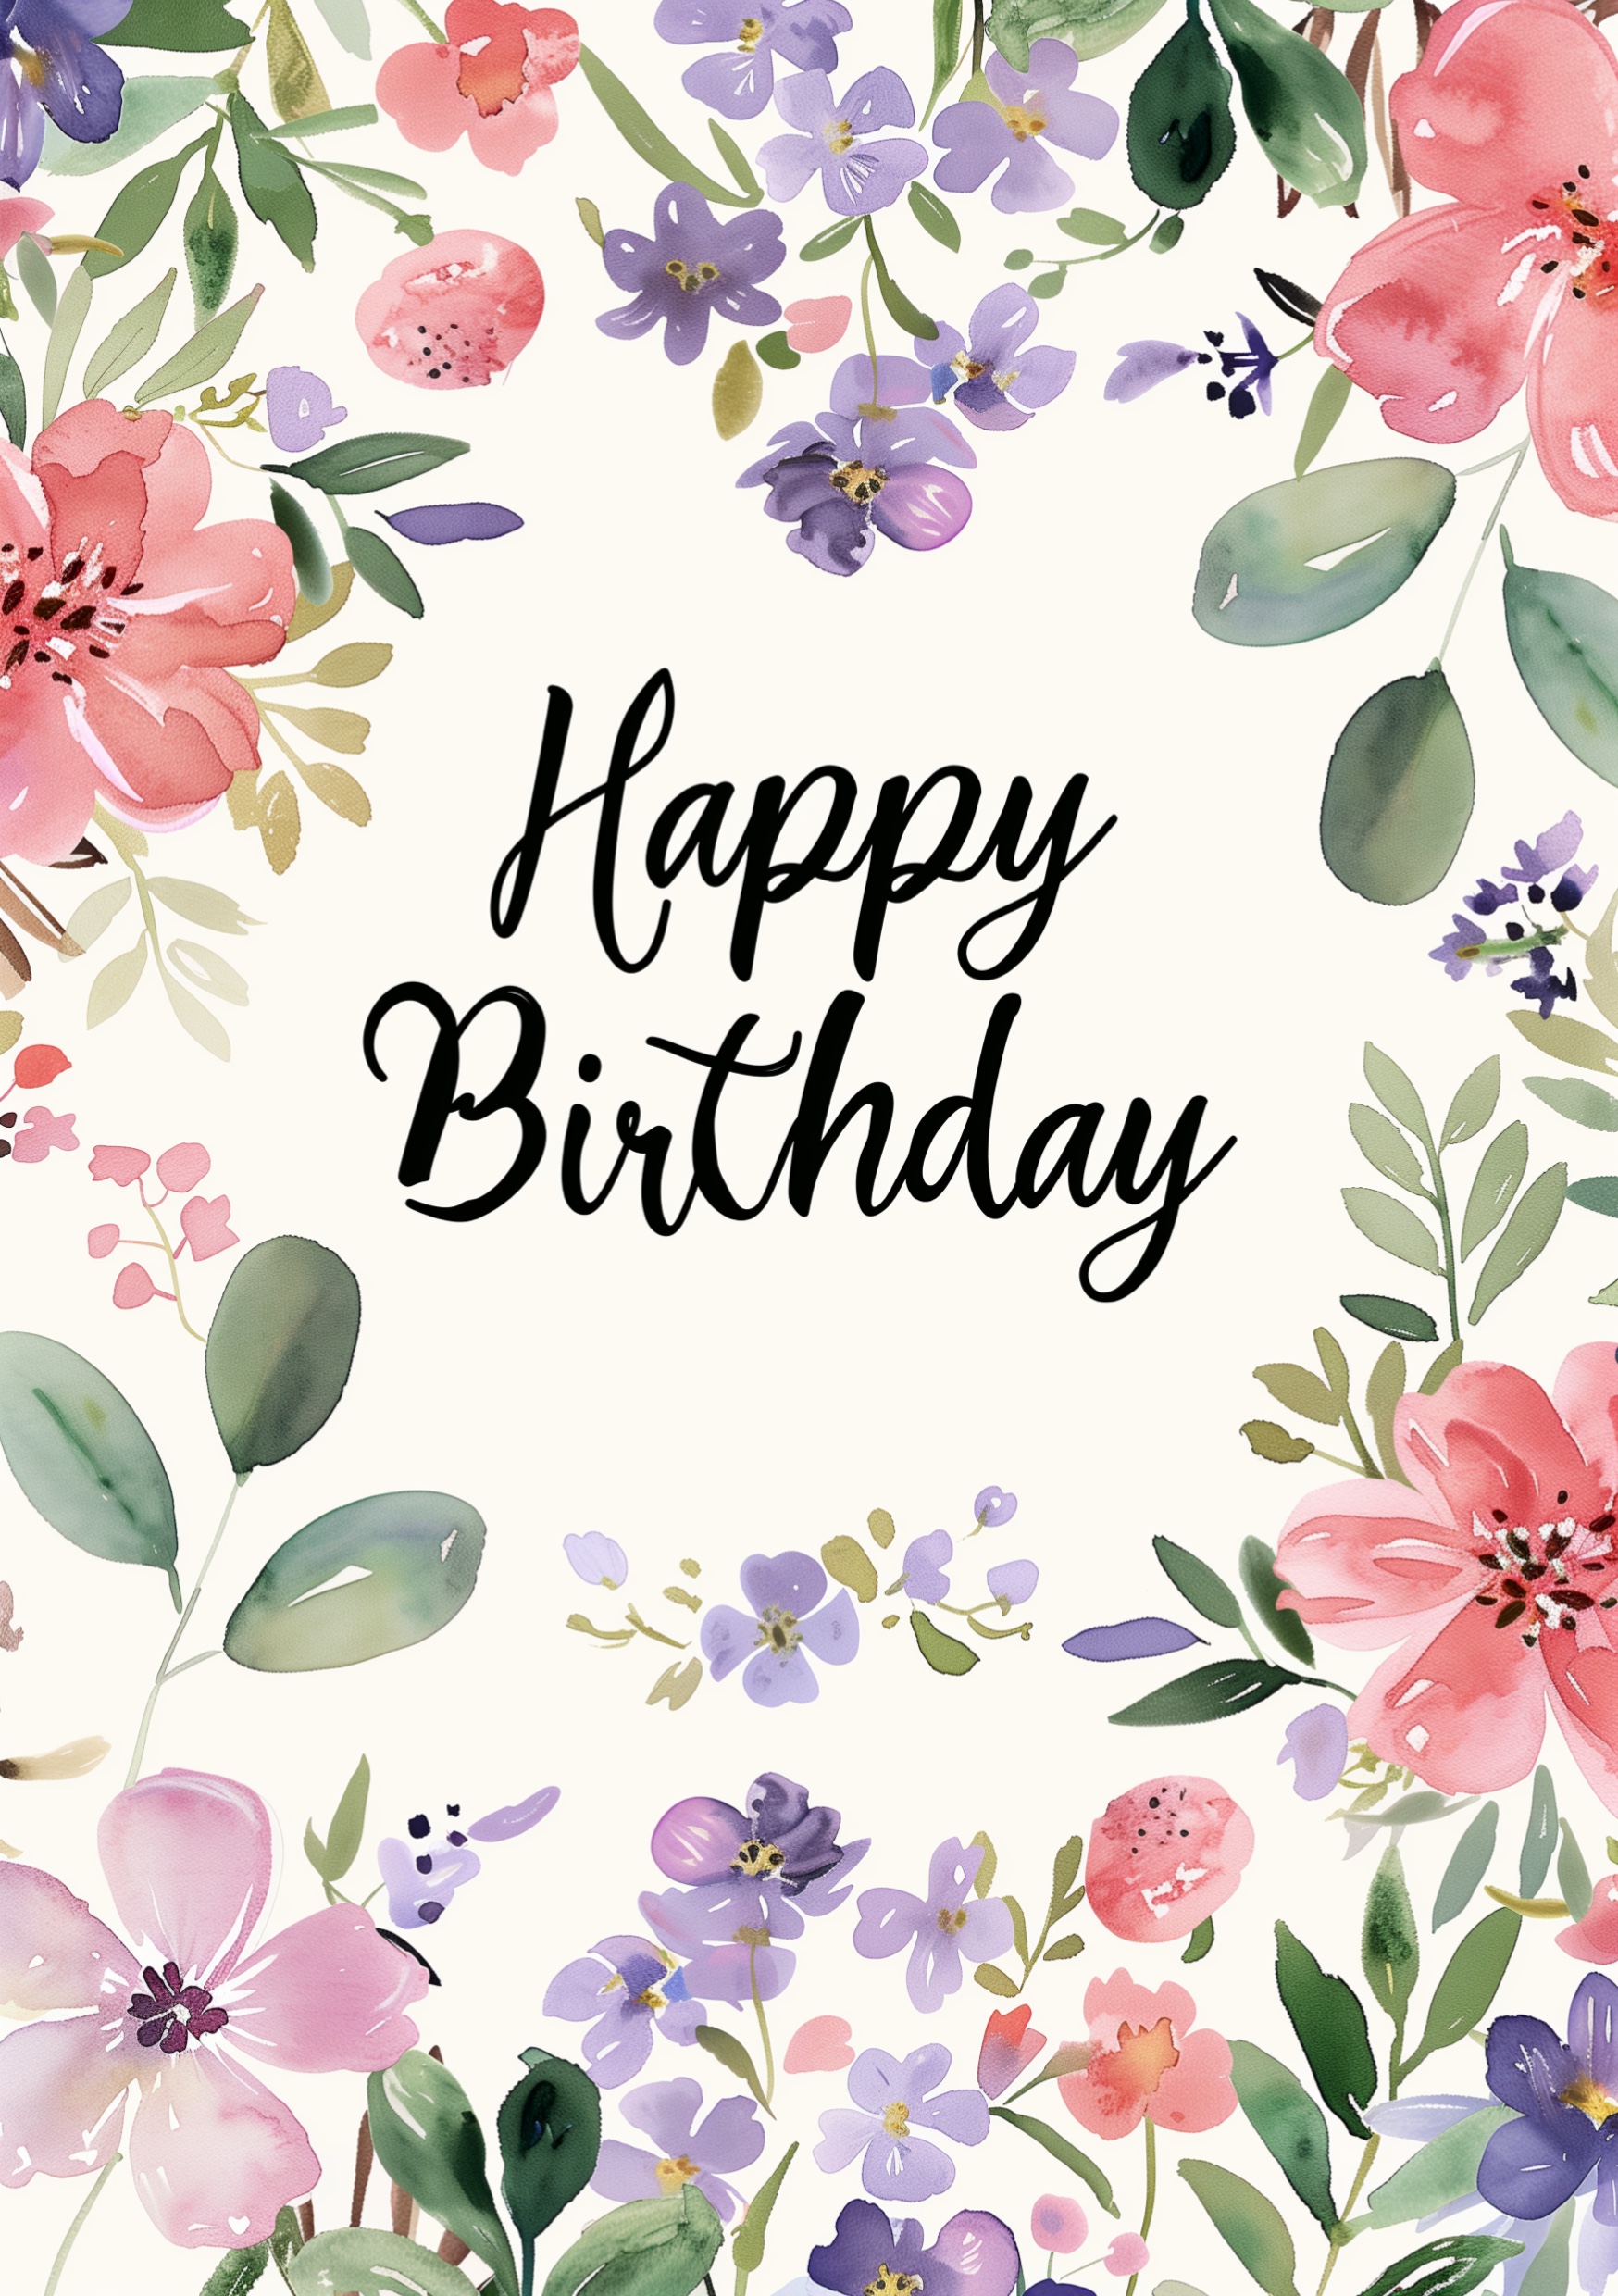 Portada para una tarjeta de feliz cumpleaños de diseño floral con el texto Happy Birthday